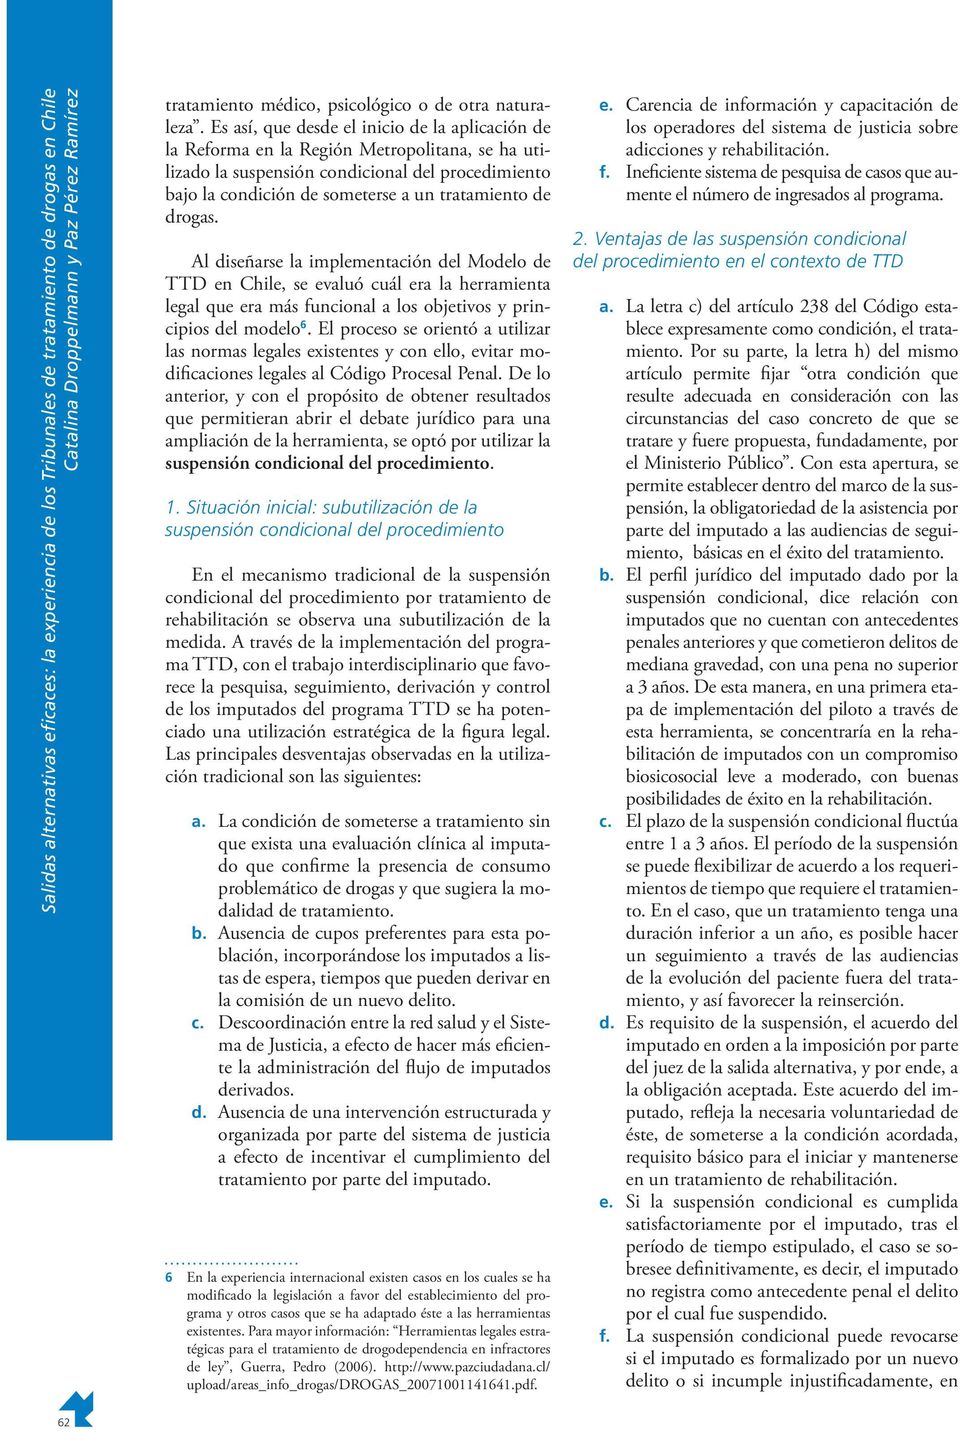 drogas. Al diseñarse la implementación del Modelo de TTD en Chile, se evaluó cuál era la herramienta legal que era más funcional a los objetivos y principios del modelo 6.